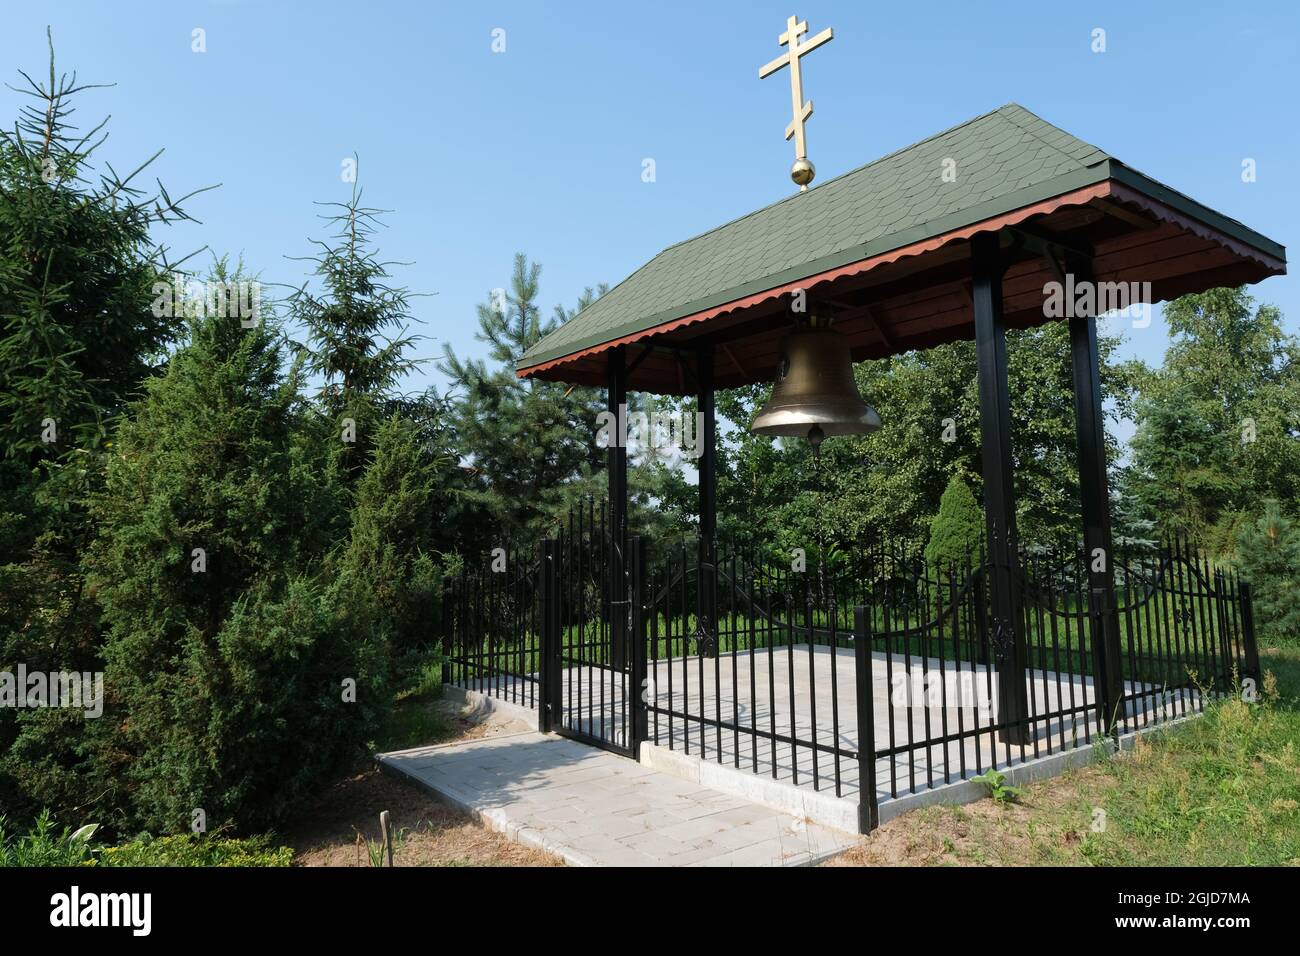 Odrynki, Polonia - 12 de julio de 2021: Ermita ortodoxa situada en una islote entre los canales. Tranquilidad y paz para esta comunidad cerca de Narew. Foto de stock